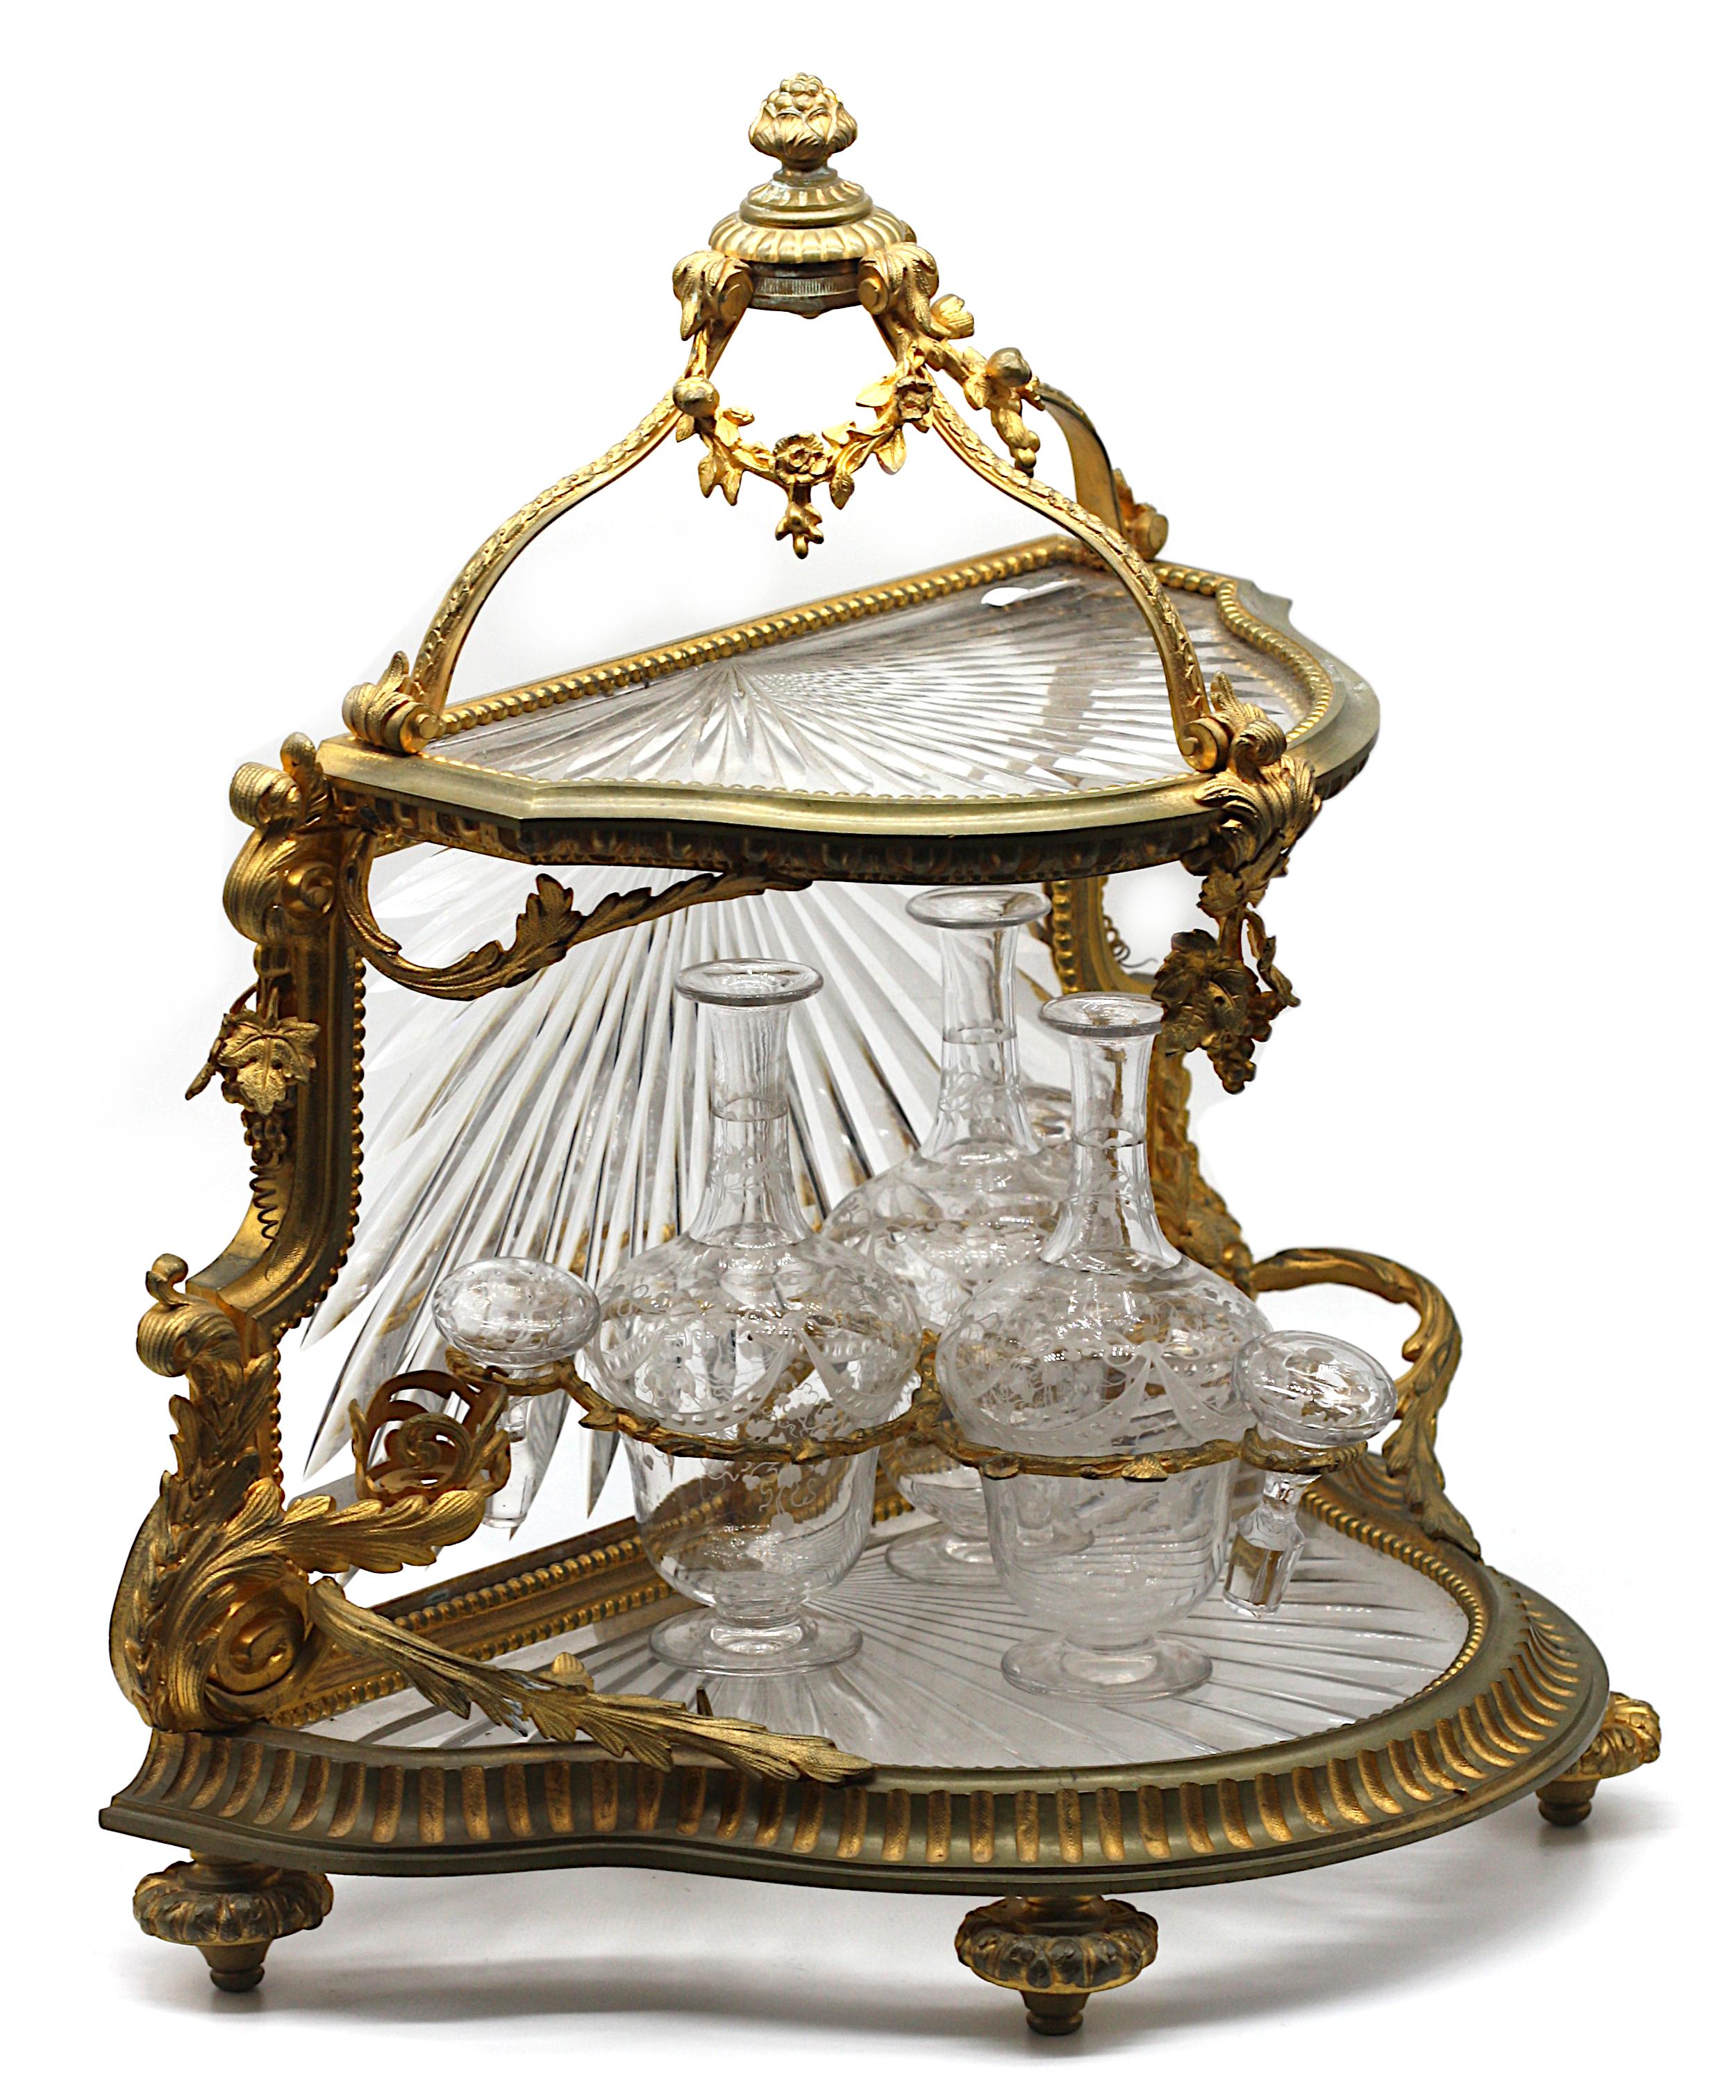 
Service à liqueur en bronze doré et verre taillé (Tantale)
Fin du 19e siècle, peut-être Baccarat
De forme Demilune, avec une couronne ouverte, le niveau supérieur à charnière se soulevant et serti d'une tablette découpée avec des cannelures